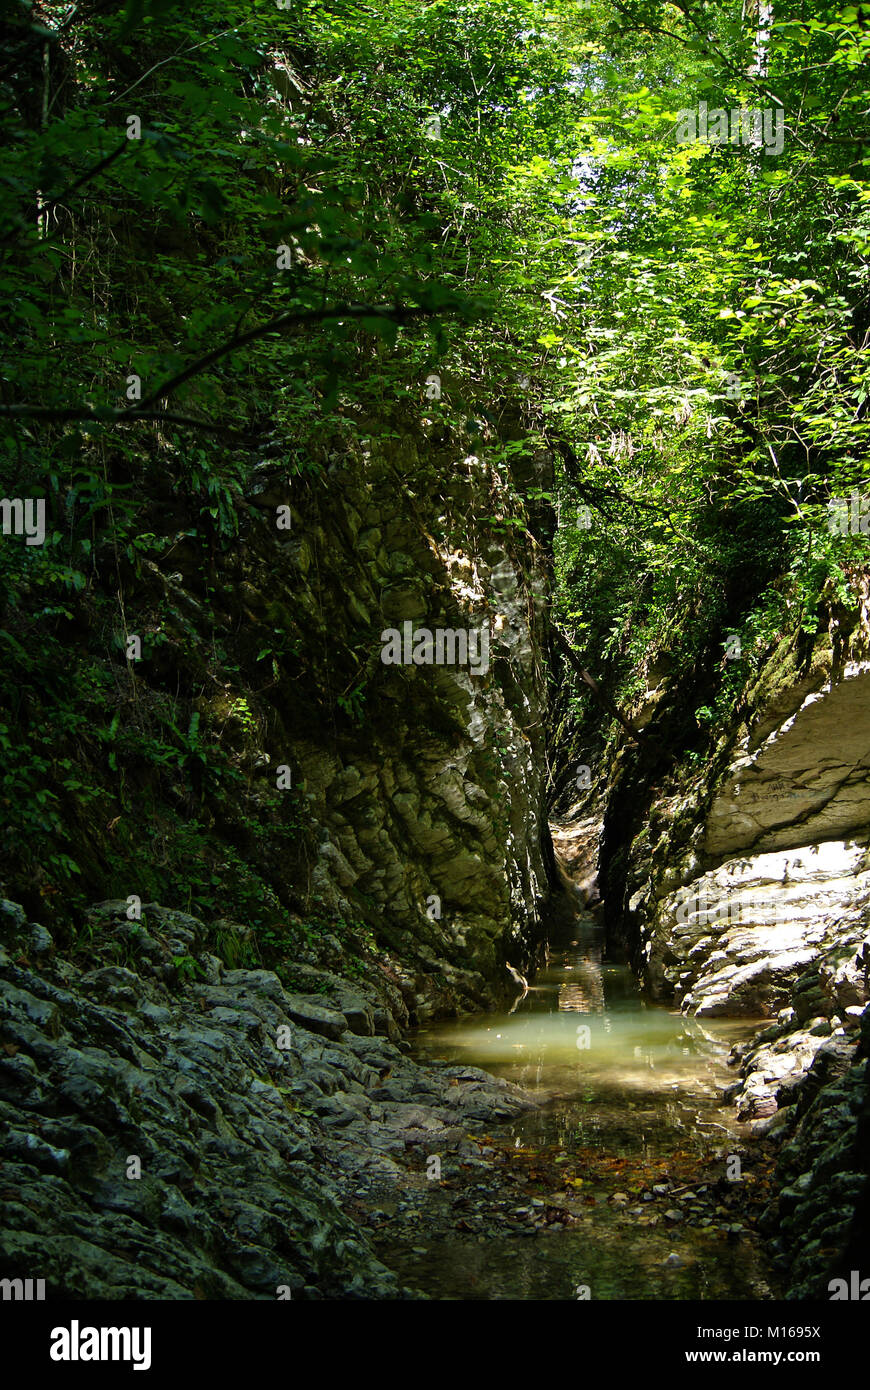 Un étroit canyon pierre ombragé d'un ruisseau dans une forêt tropicale, avec la lumière du soleil percent le feuillage dense Banque D'Images